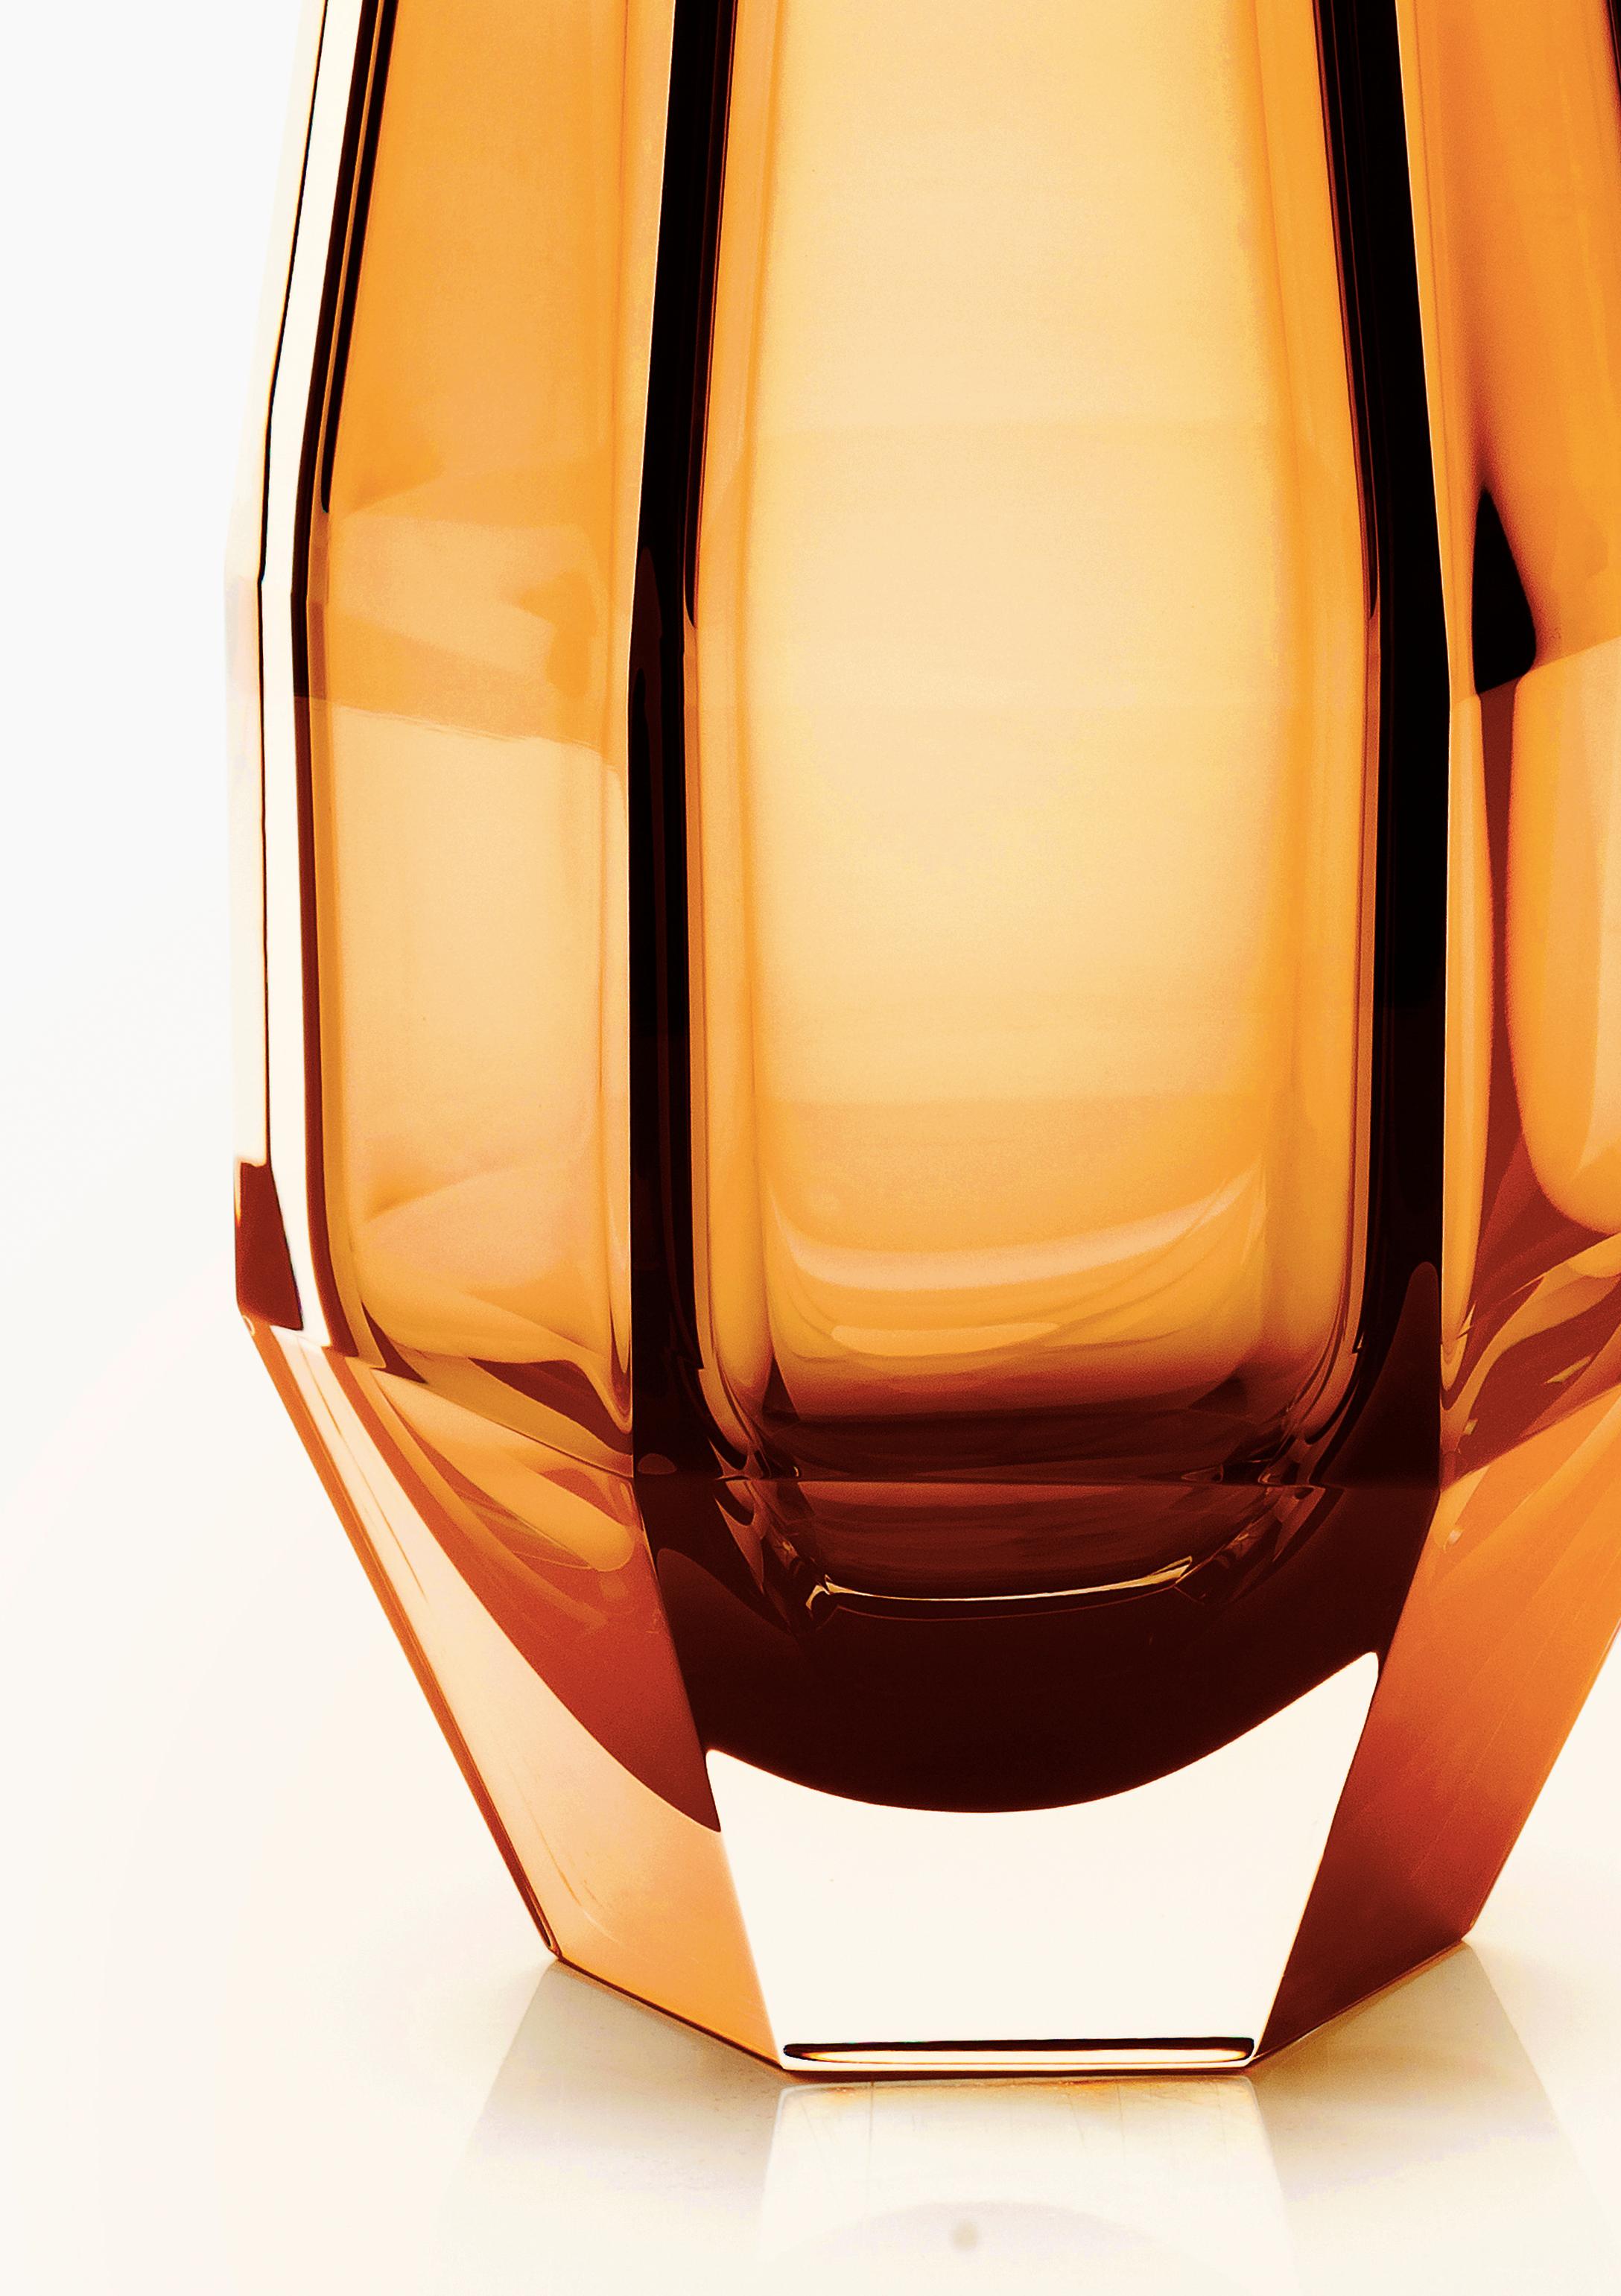 21e siècle Alessandro Mendini, vase transparent GEMELLO, verre de Murano.
Purho poursuit sa recherche de produits aux formes complémentaires avec la paire de vases Gemello et Gemella conçus par Alessandro Mendini. Partageant le même concept de